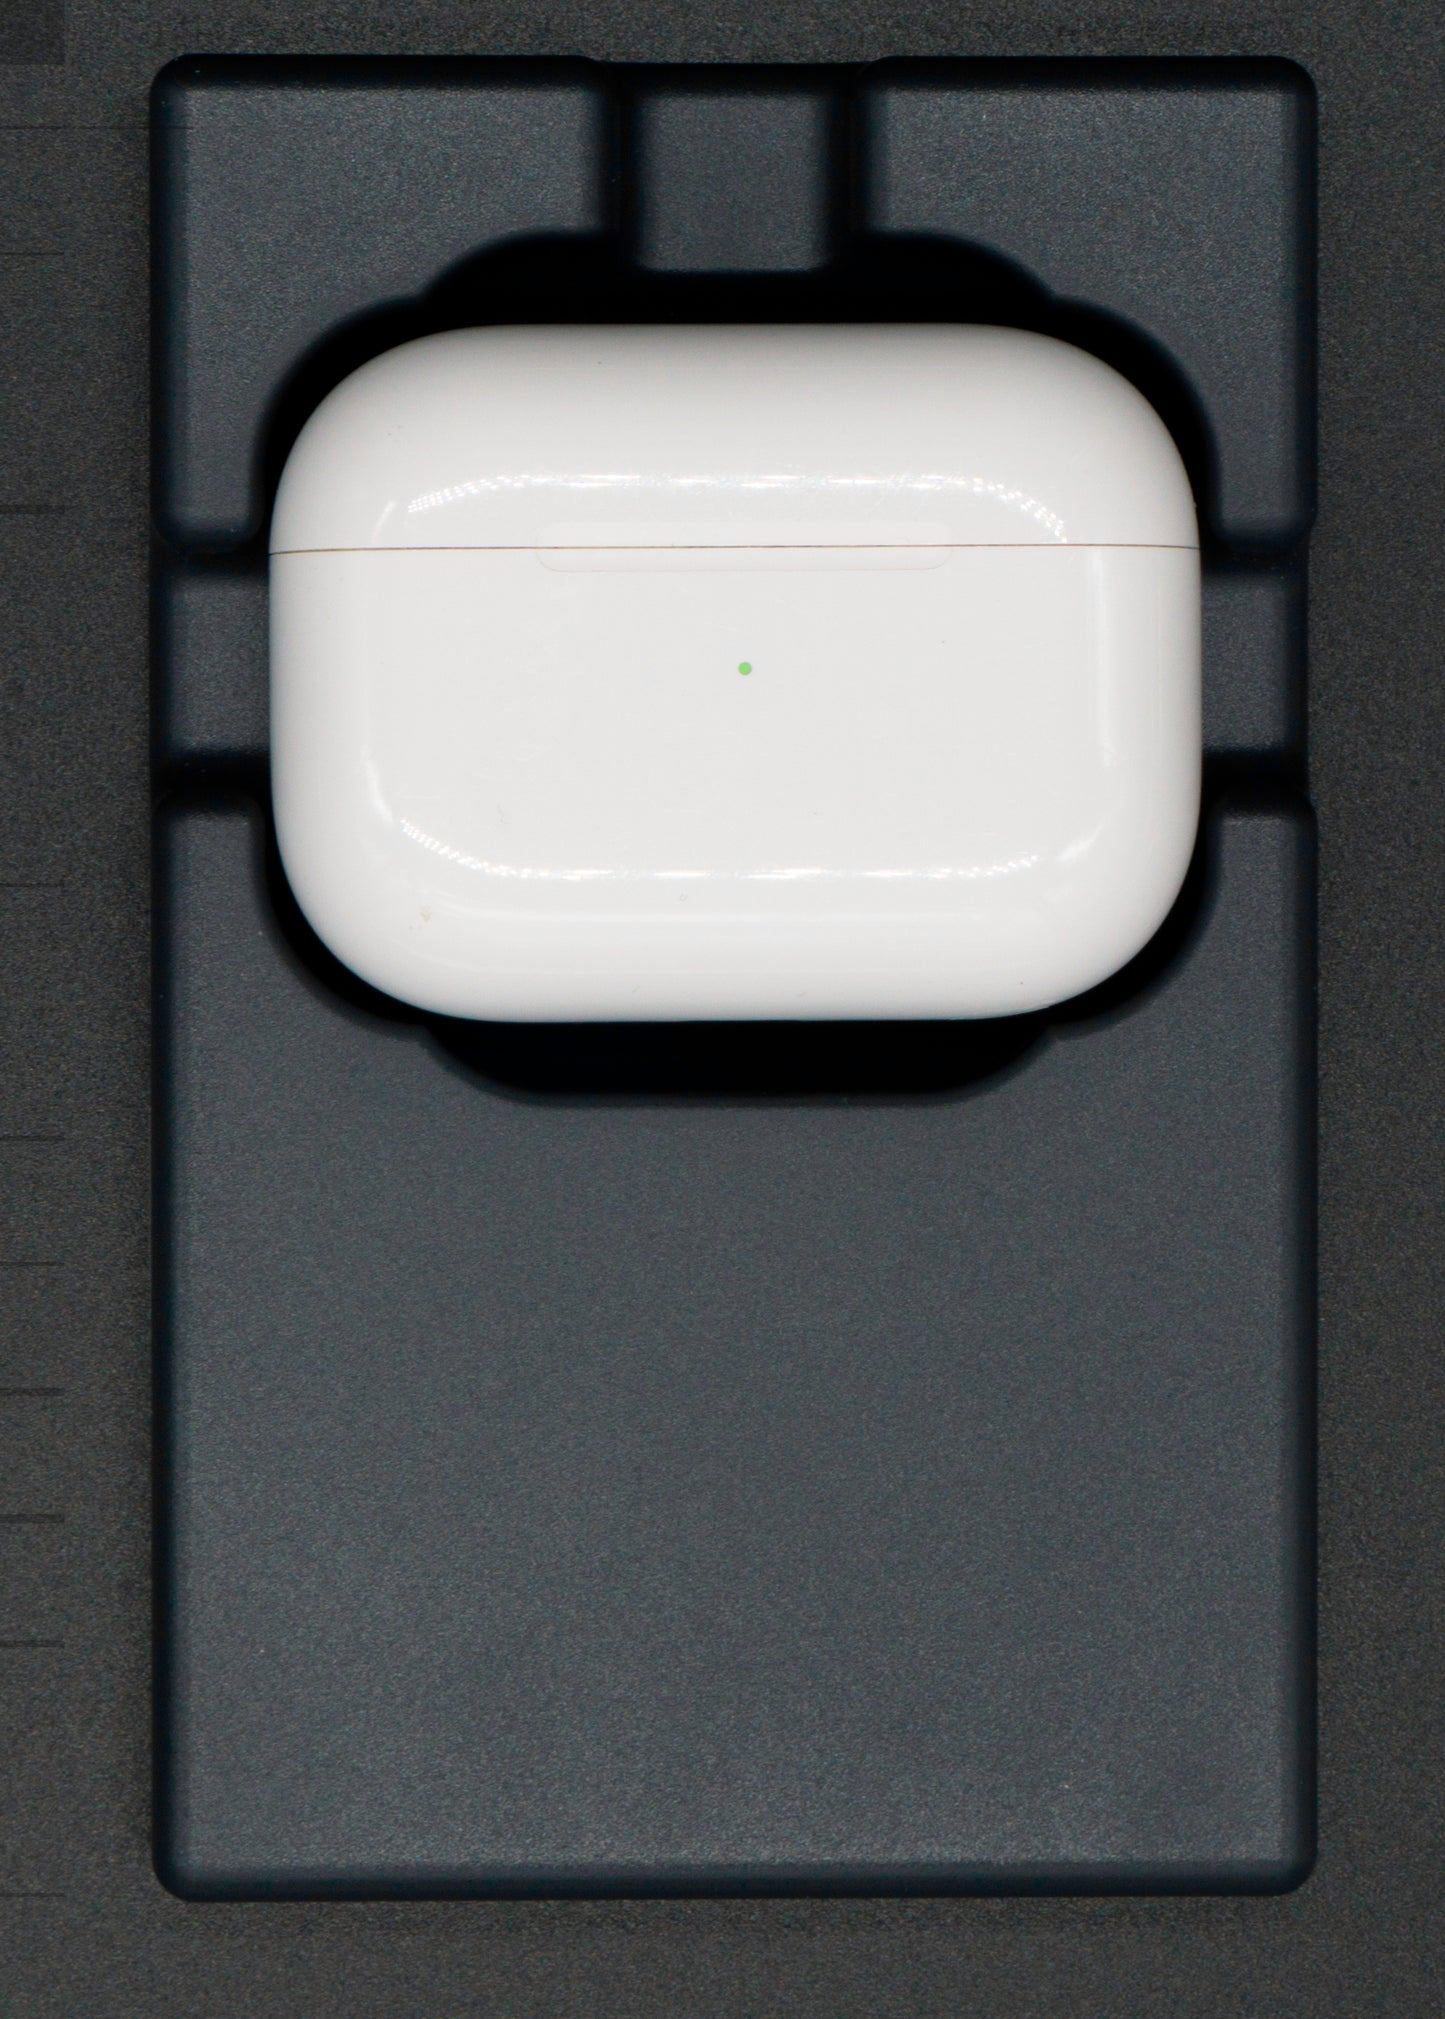 Grafietgrijze AirPod-houder, perfect passend op het Tesla draadloze laadpad, ontworpen voor het opladen van AirPods van alle generaties en modellen Nederland en Belgie